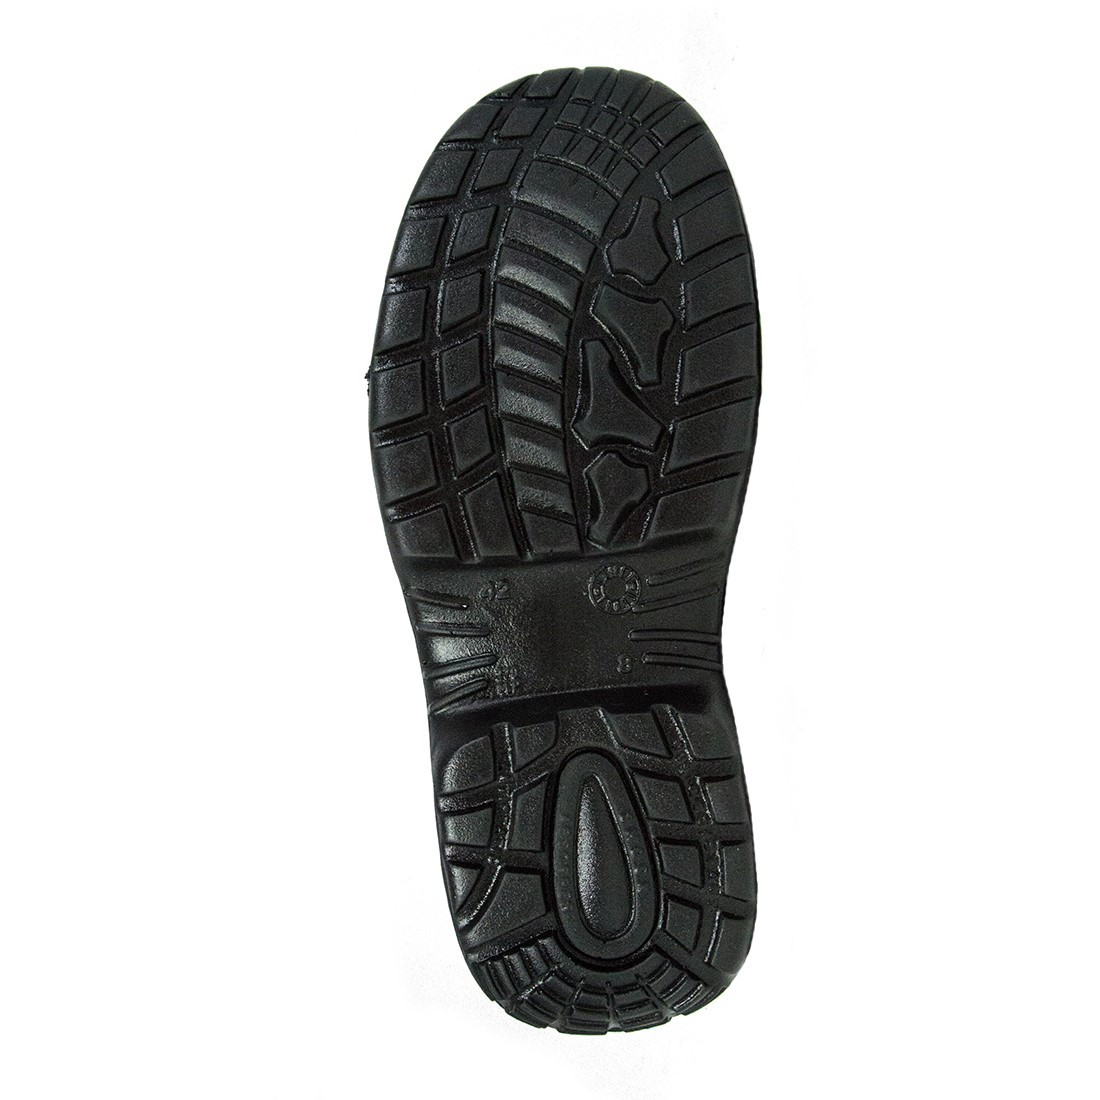 Pantofi Harlem S1P SRC - Incaltaminte de protectie | Bocanci, Pantofi, Sandale, Cizme